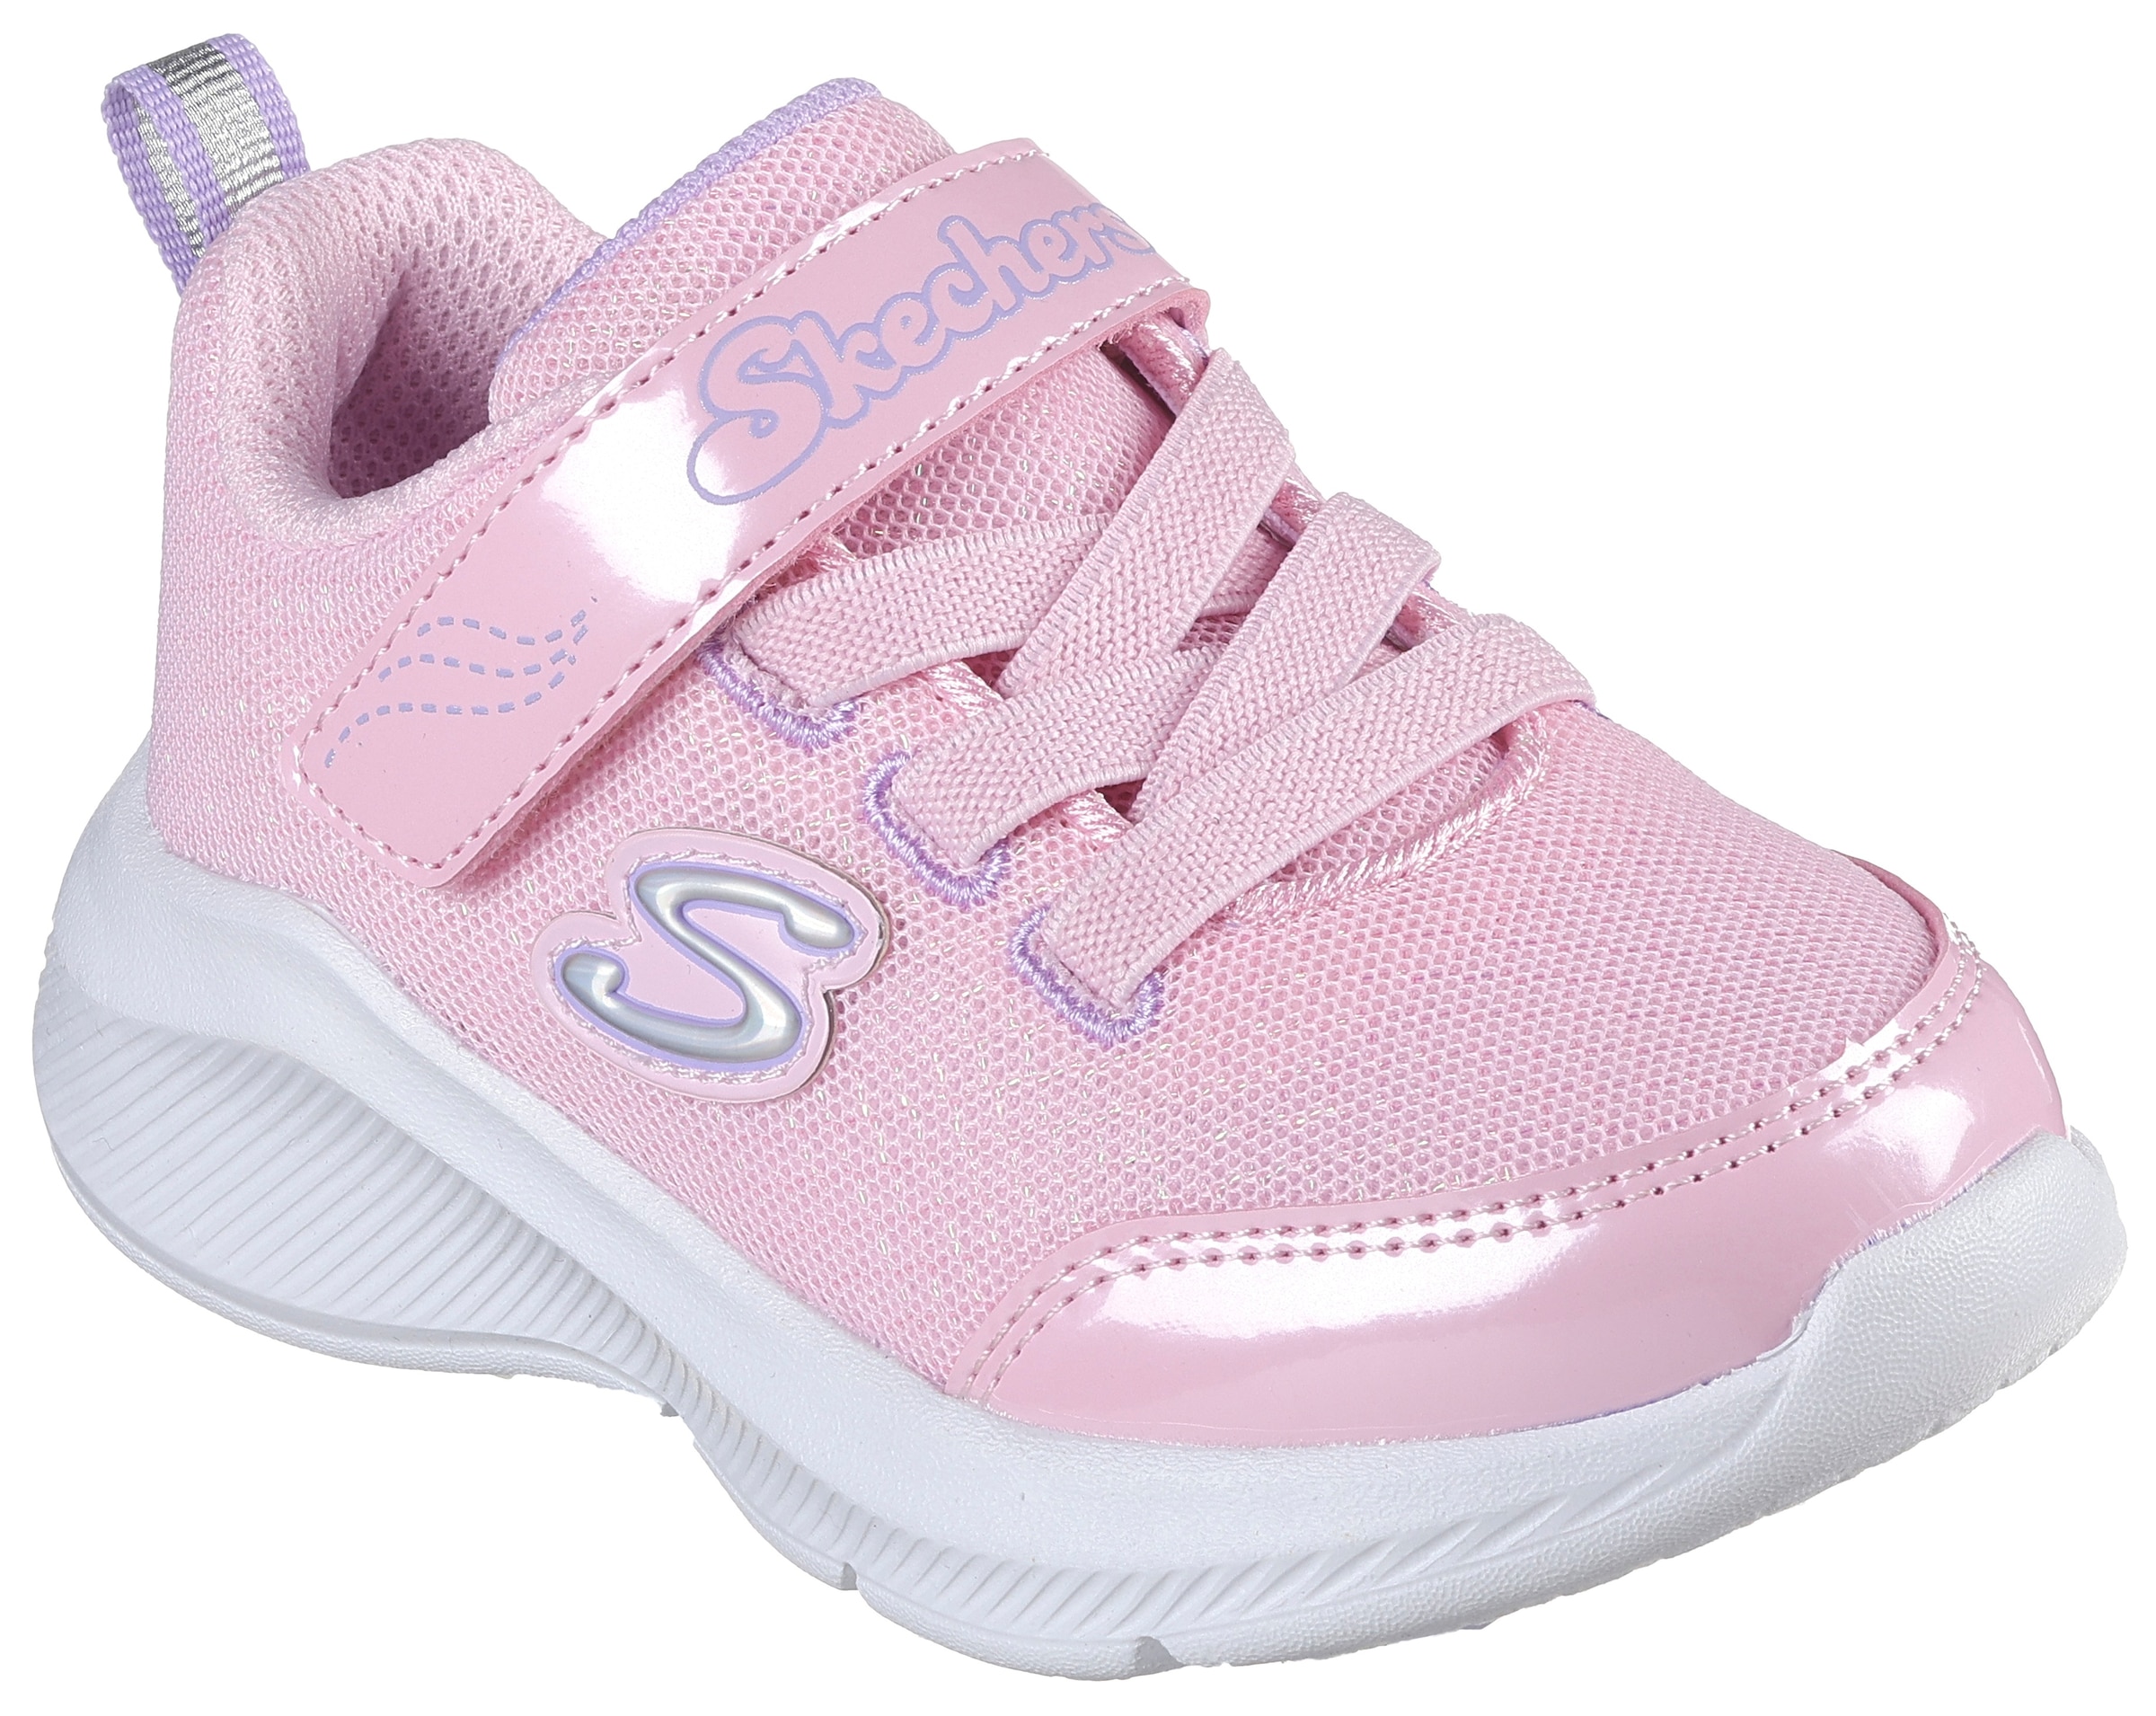 Skechers Kids Lauflernschuh »SOLE SWIFTERS«, Sneaker, Klettschuh, Mädchen Schuh mit schönen Glitzerdetails